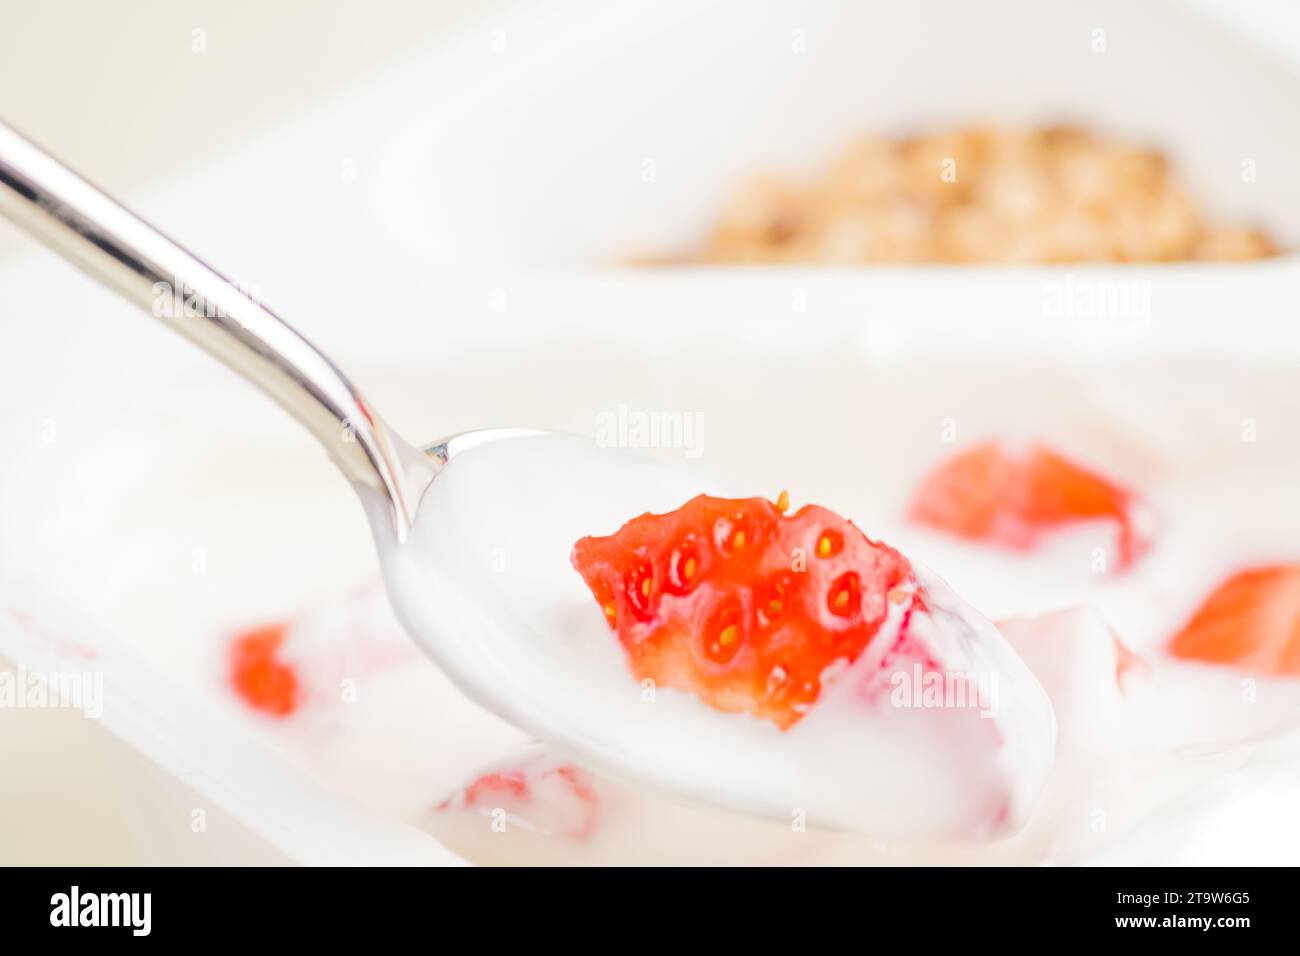 primo piano di fragola sana e yogurt bianco sul cucchiaio, concetto di nutrizione alimentare sana Foto Stock